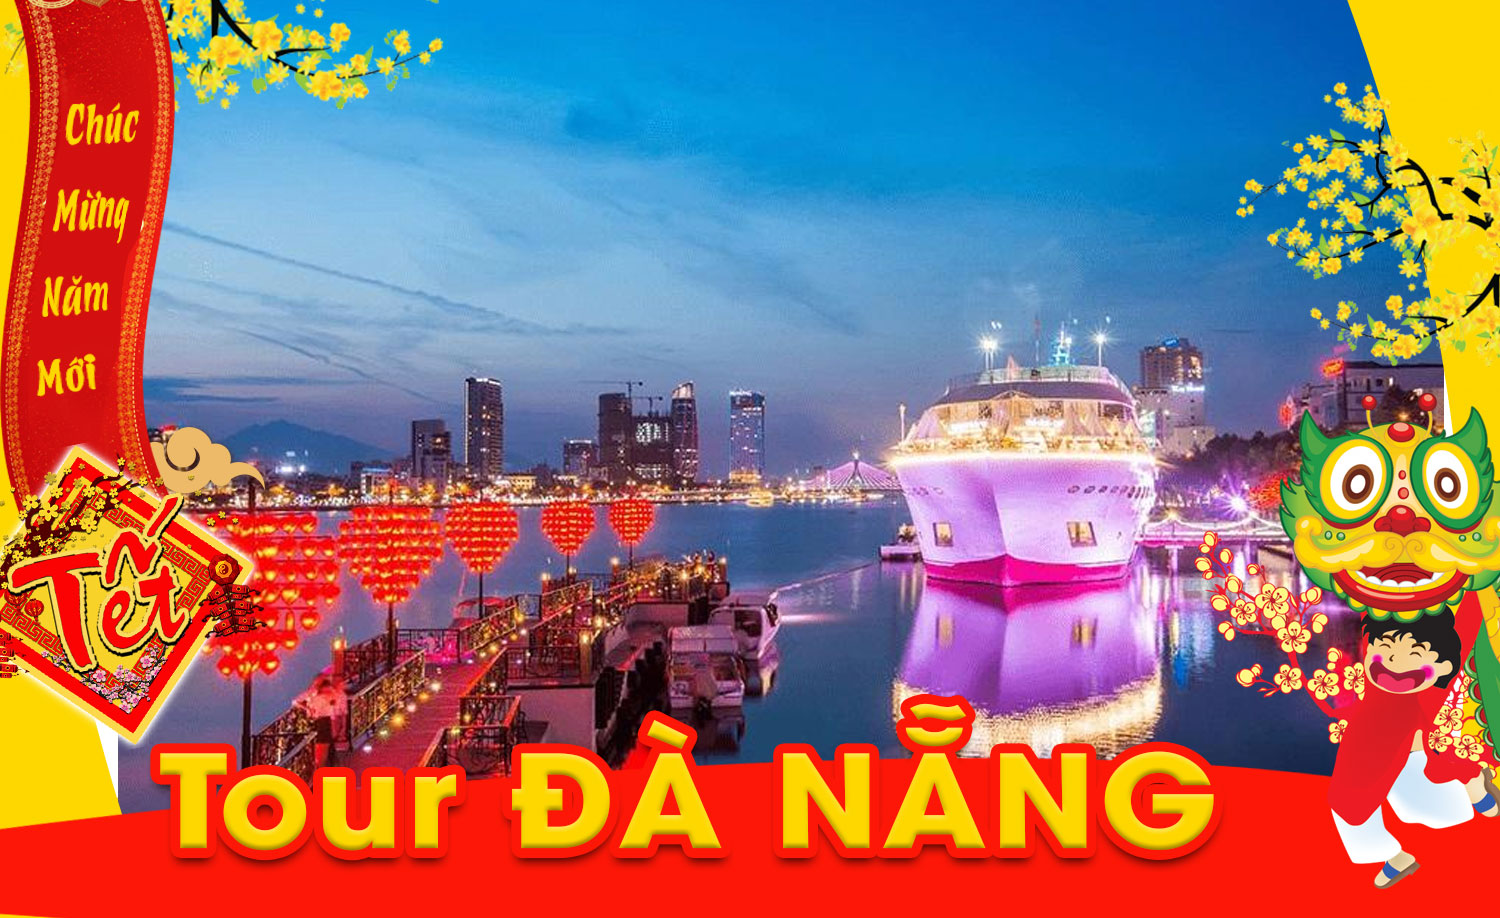 Tour du lịch Đà Nẵng Tết Nguyên Đán 2020